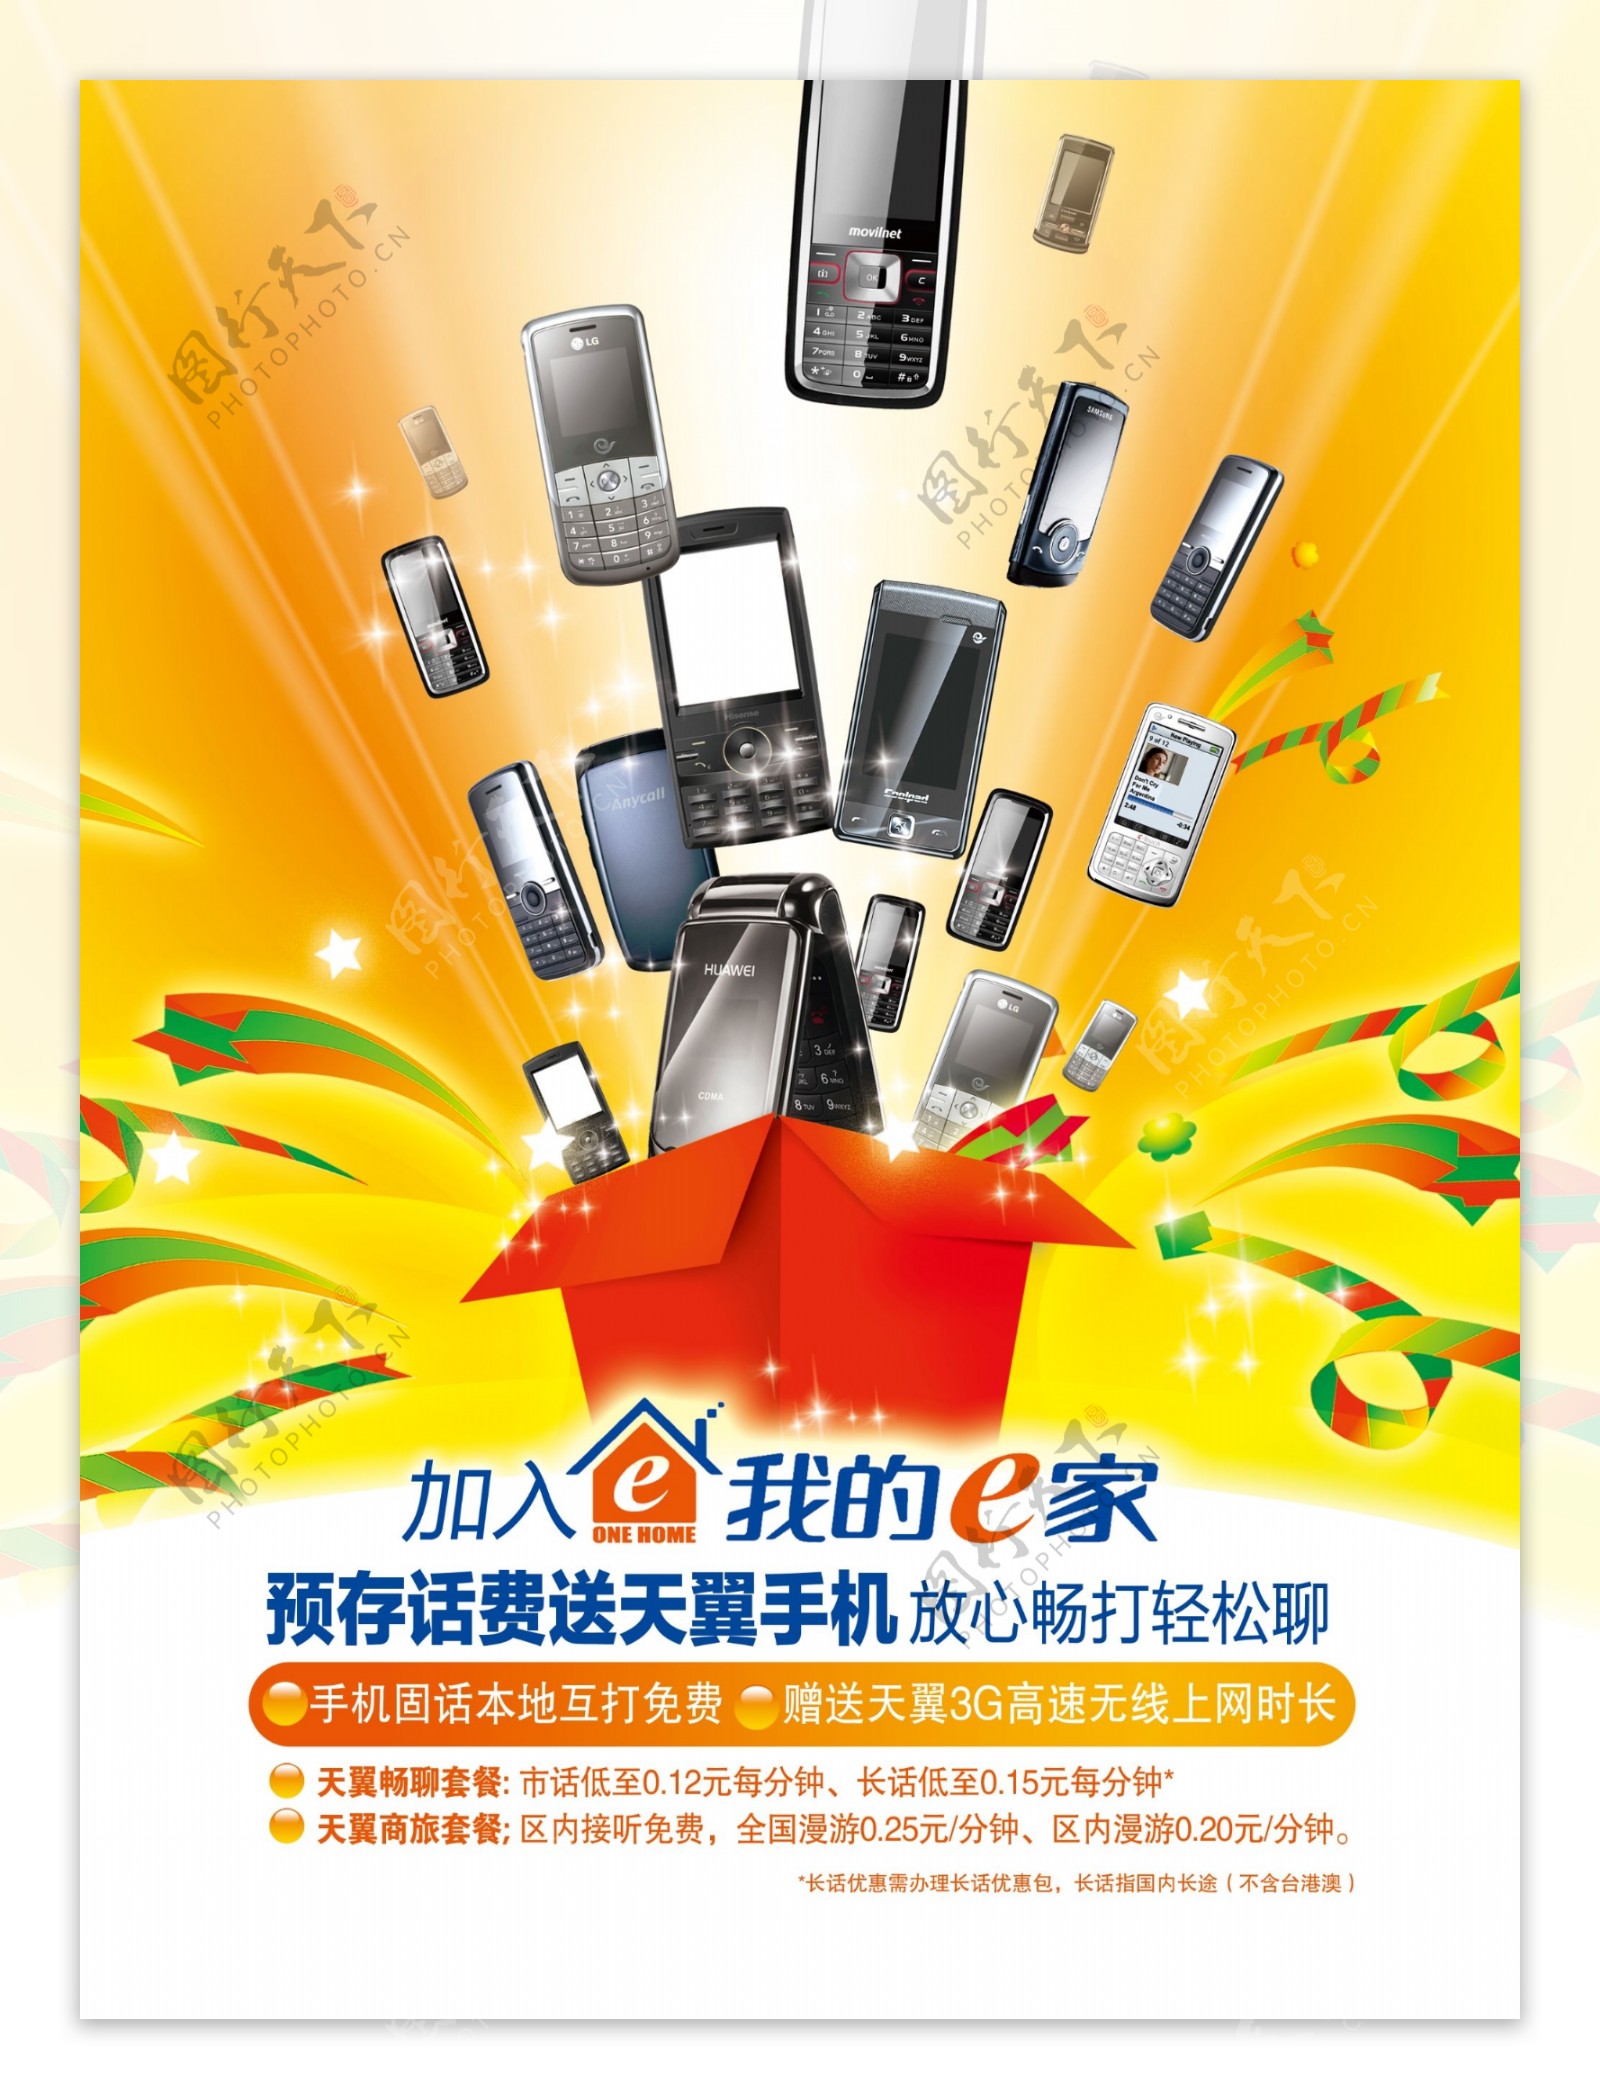 中国电信存话费送天翼手机海报正面图片